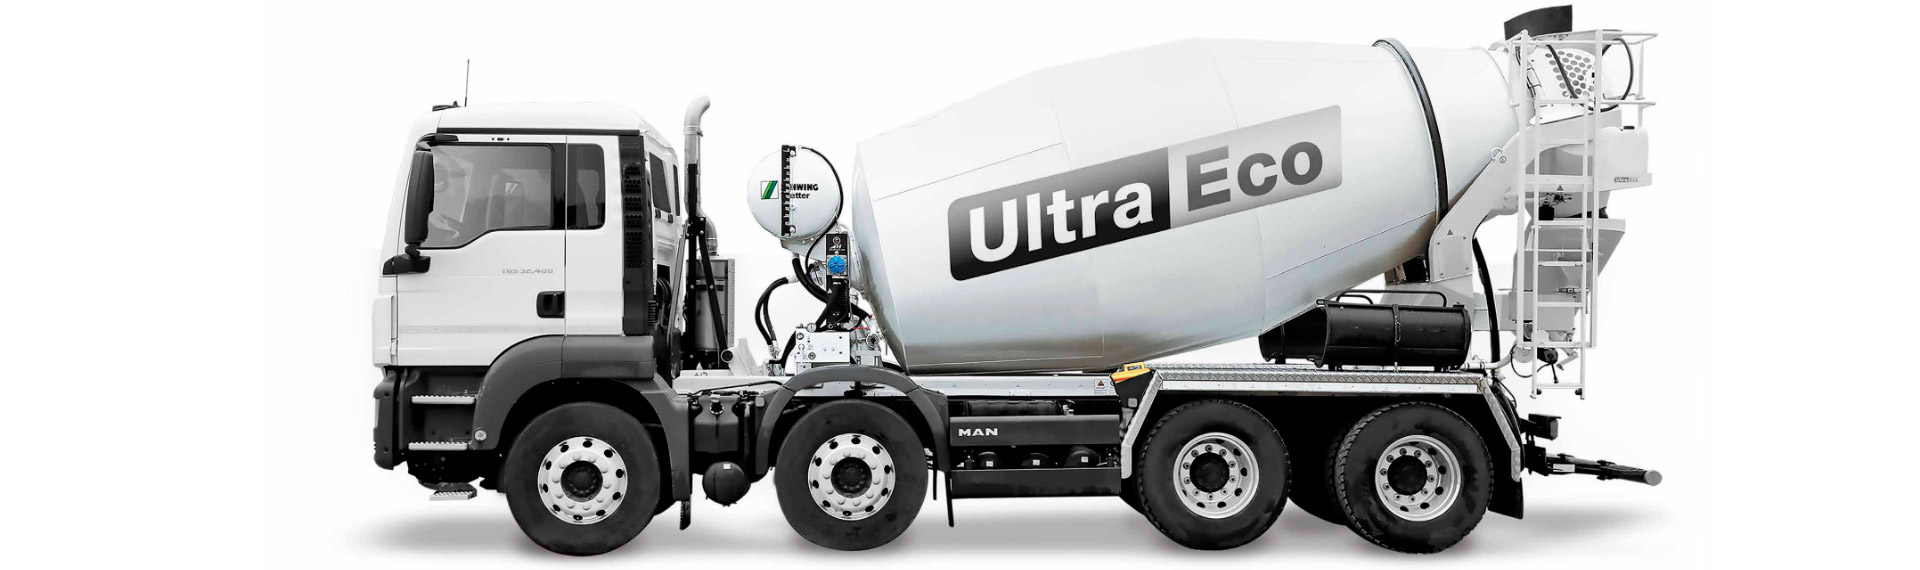 Az abrazív kopásnak rendkívüli mértékben ellenálló Hardox® kopásálló lemezből készült, fekete-fehér Ultra-Eco betonkeverő teherautó